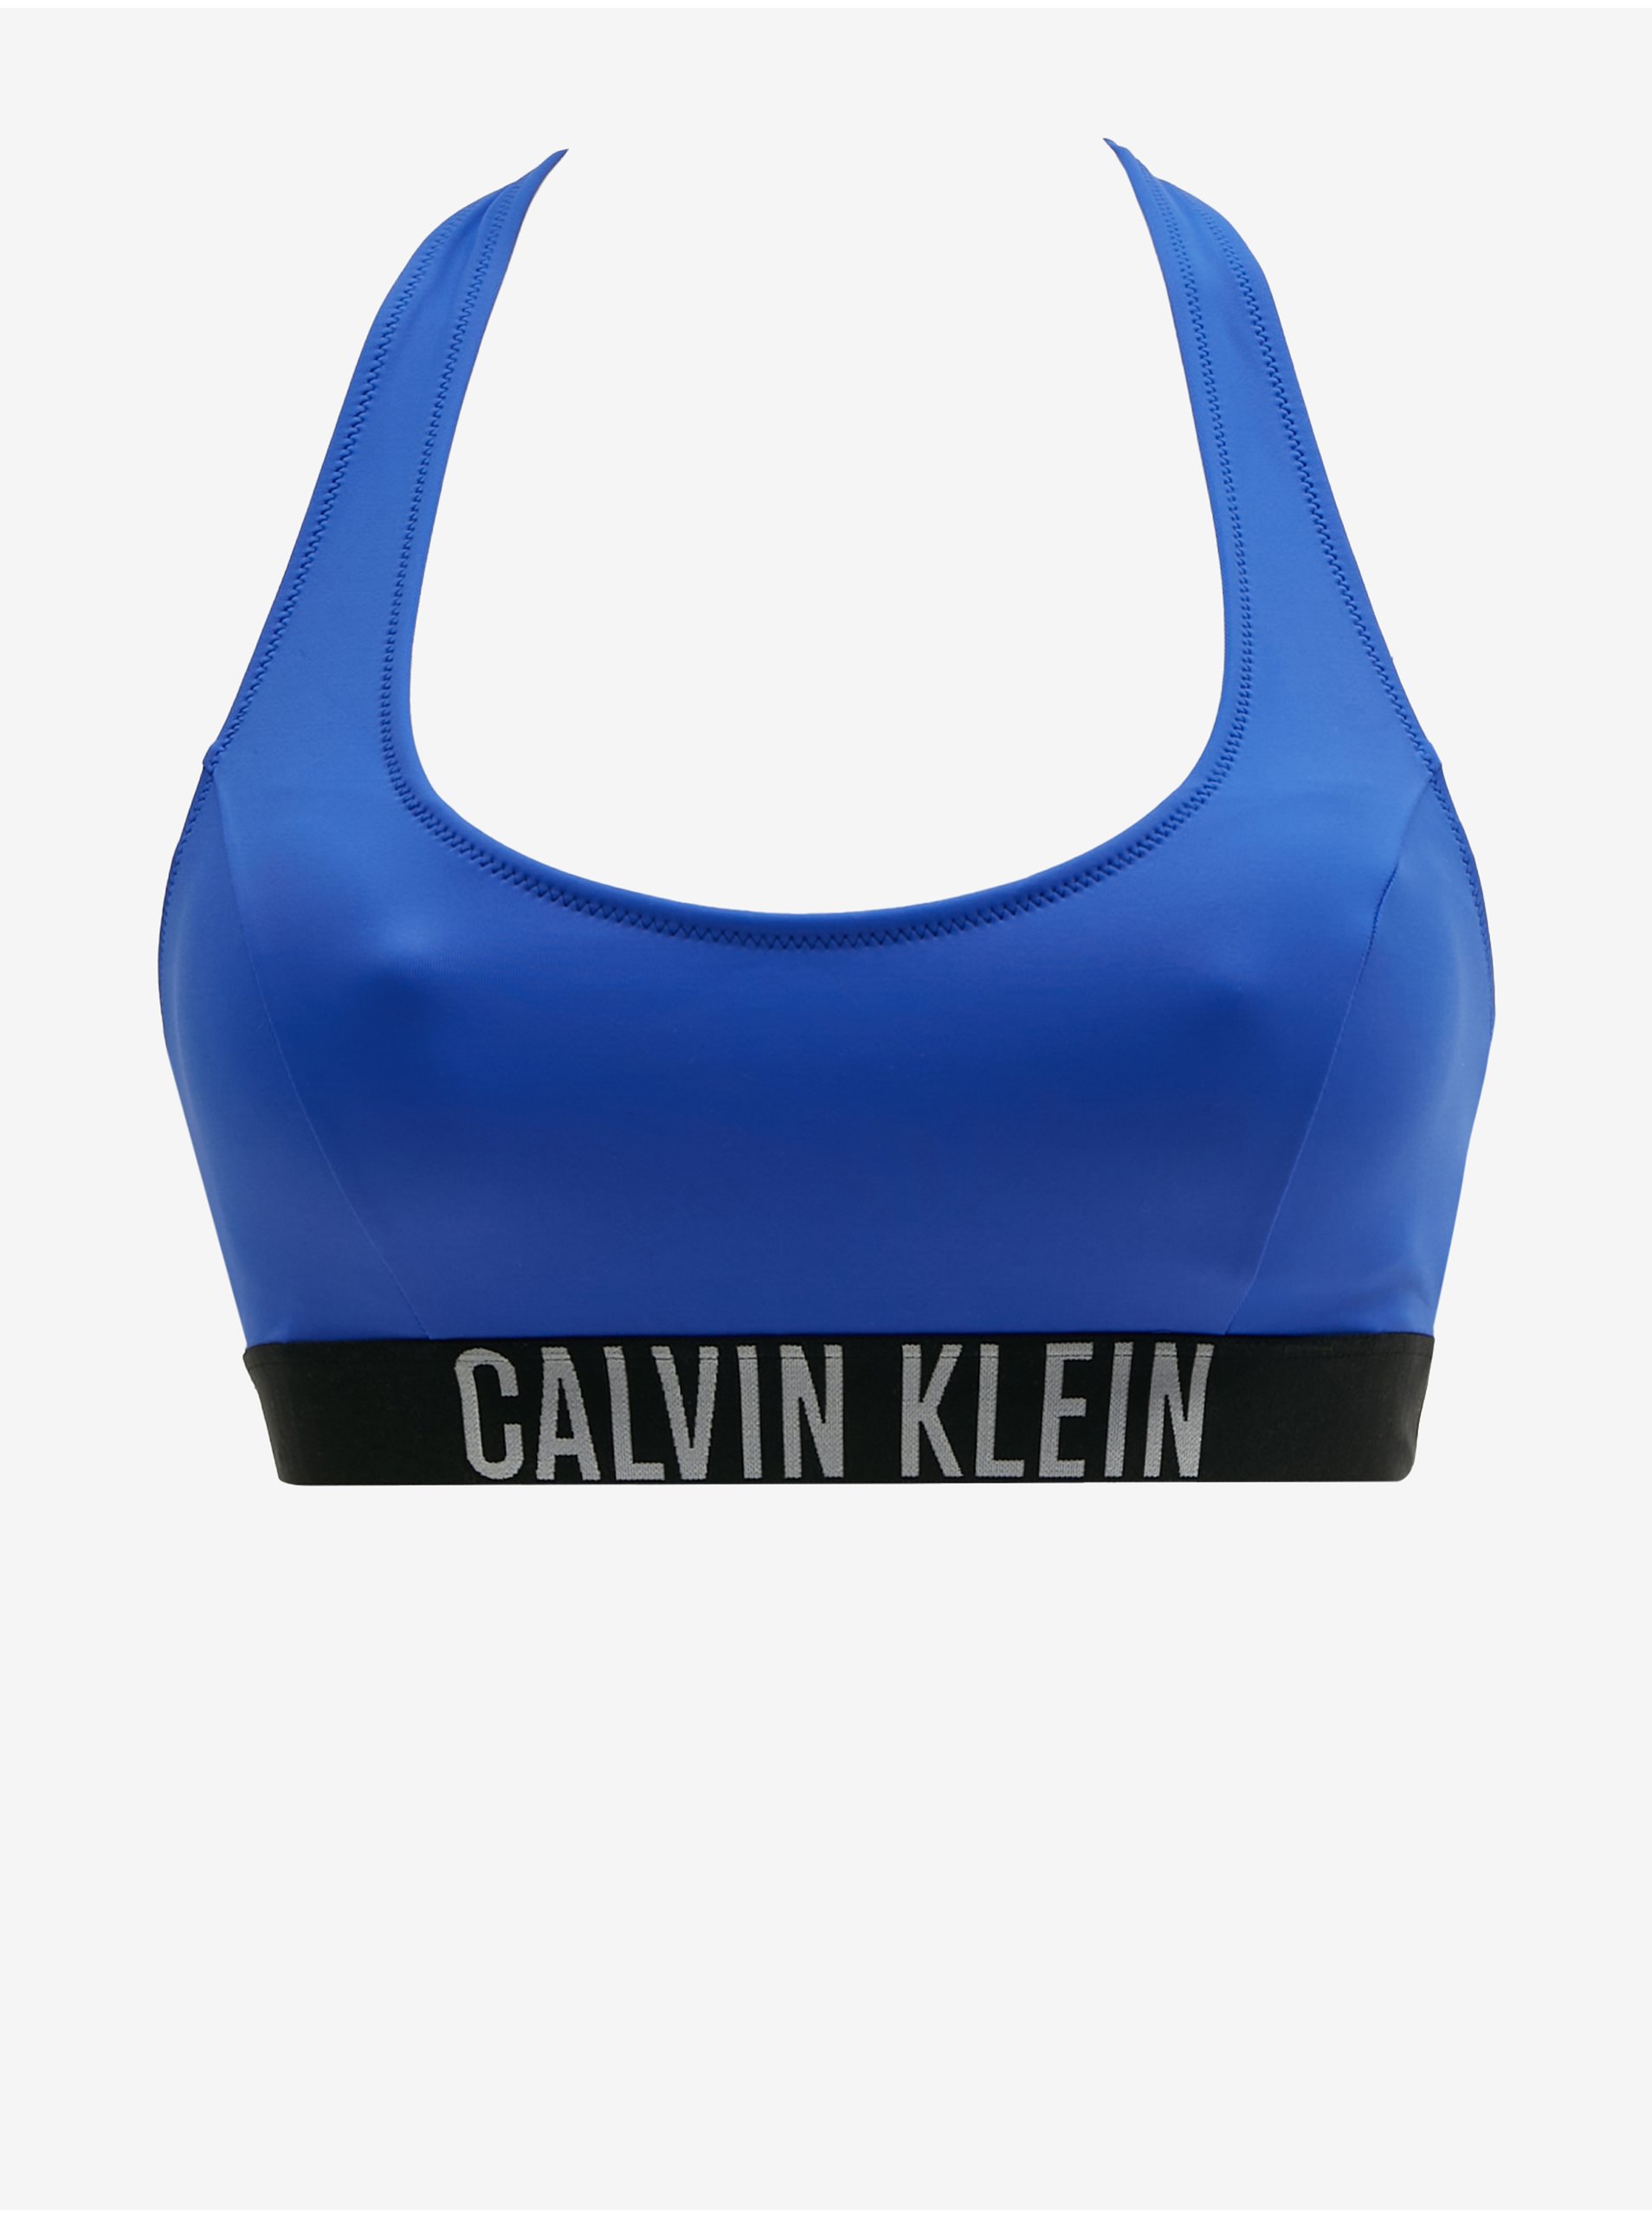 E-shop Tmavě modrý dámský horní díl plavek Calvin Klein Underwear